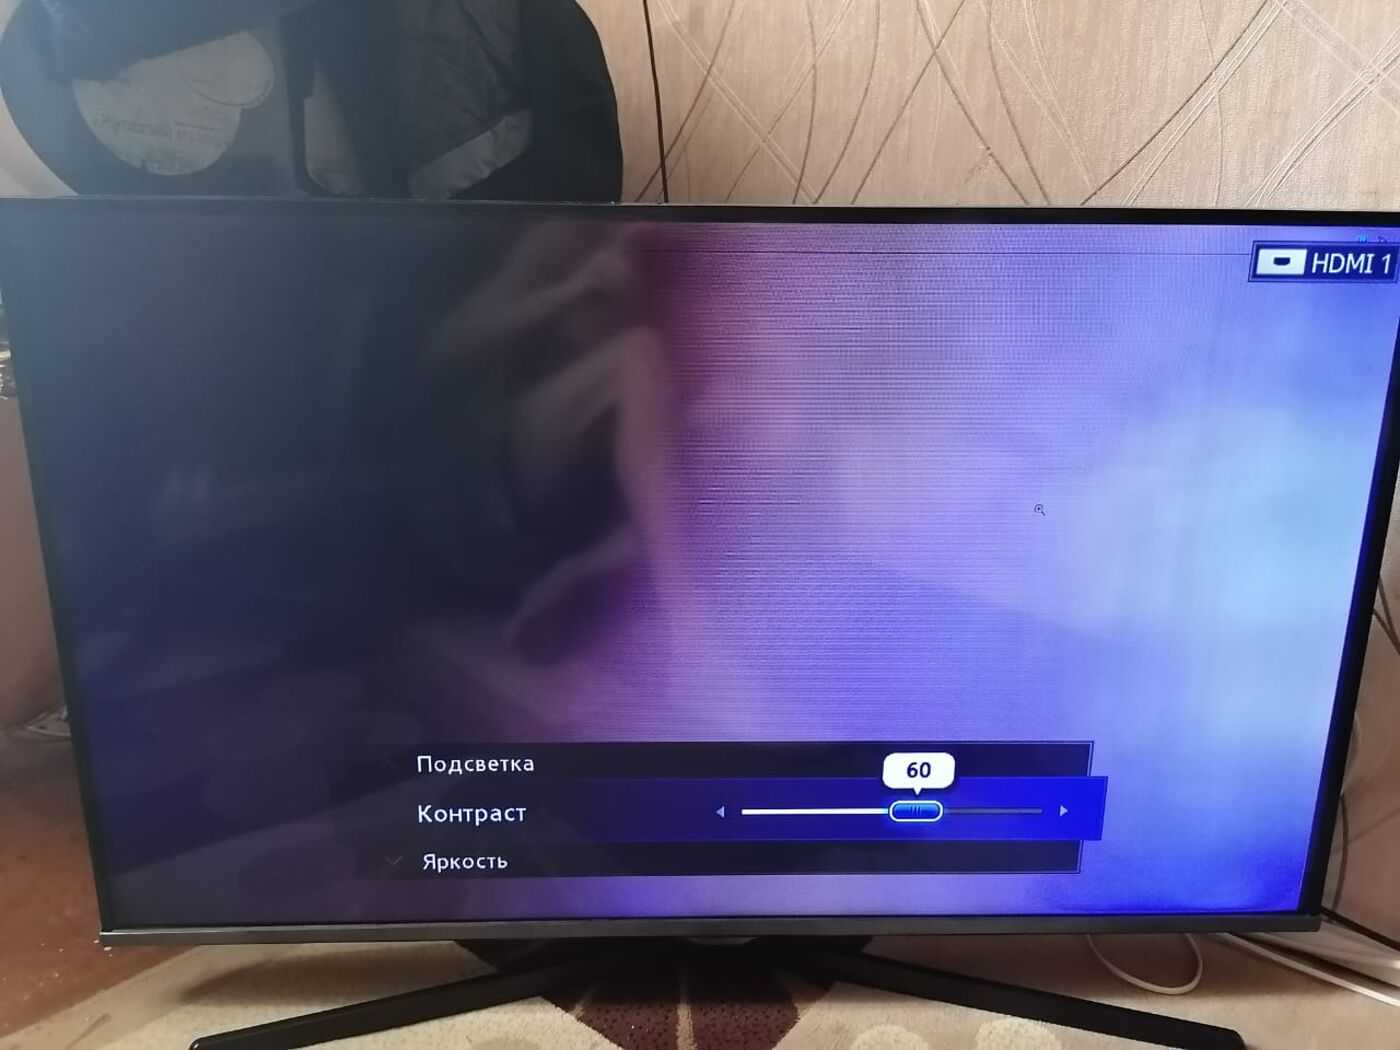 Телевизор экран не показывает что делать. Потемнение экрана телевизора самсунг. Затемнение на экране телевизора Samsung. Часть экрана телевизора потемнела. Потемнение подсветки экрана телевизора.